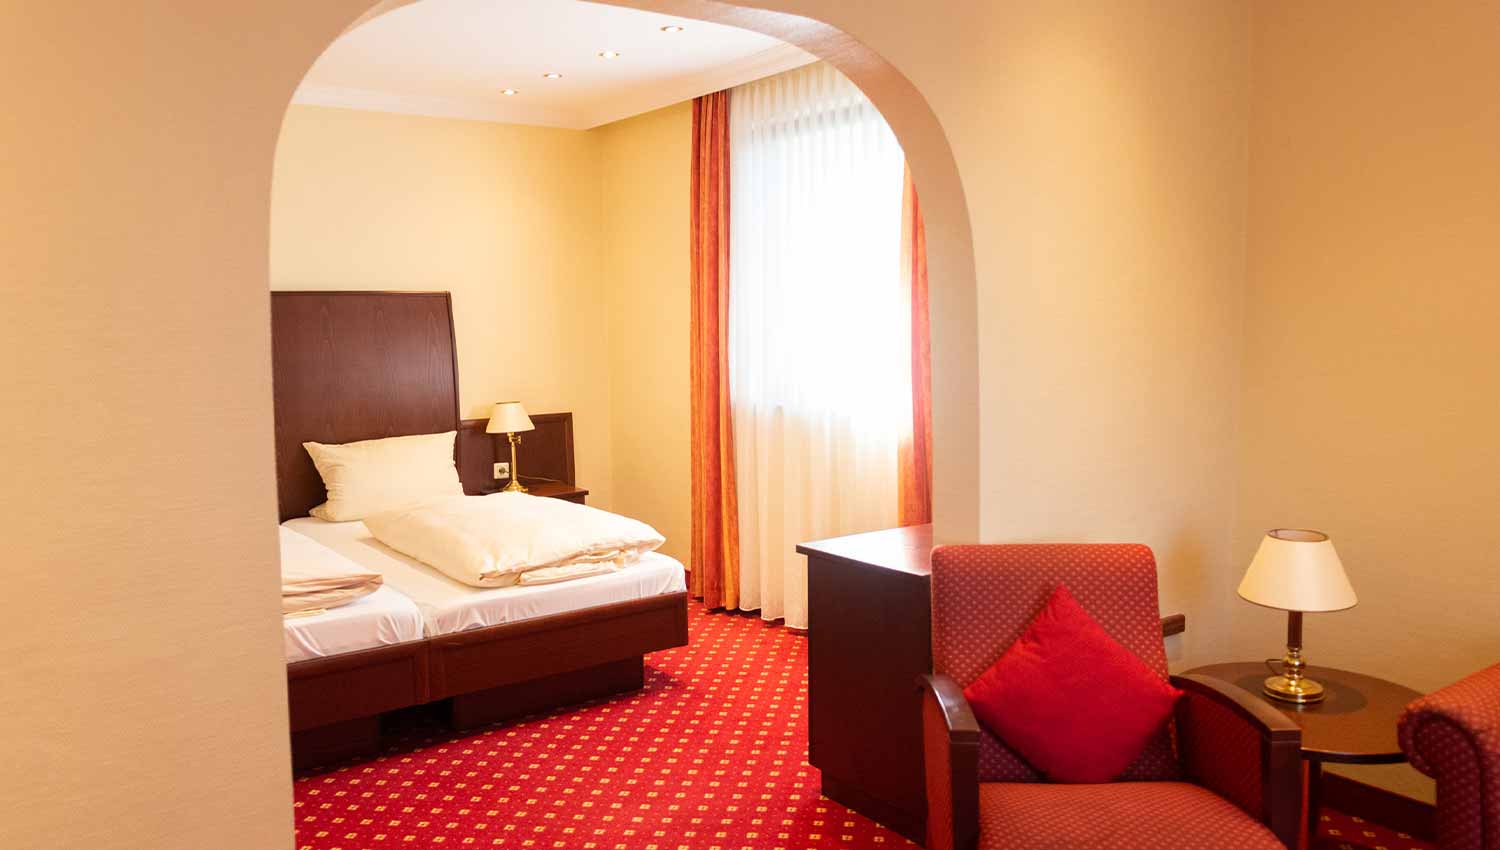 Hotel mit besonders ruhig gelegenen Zimmern in Düsseldorf